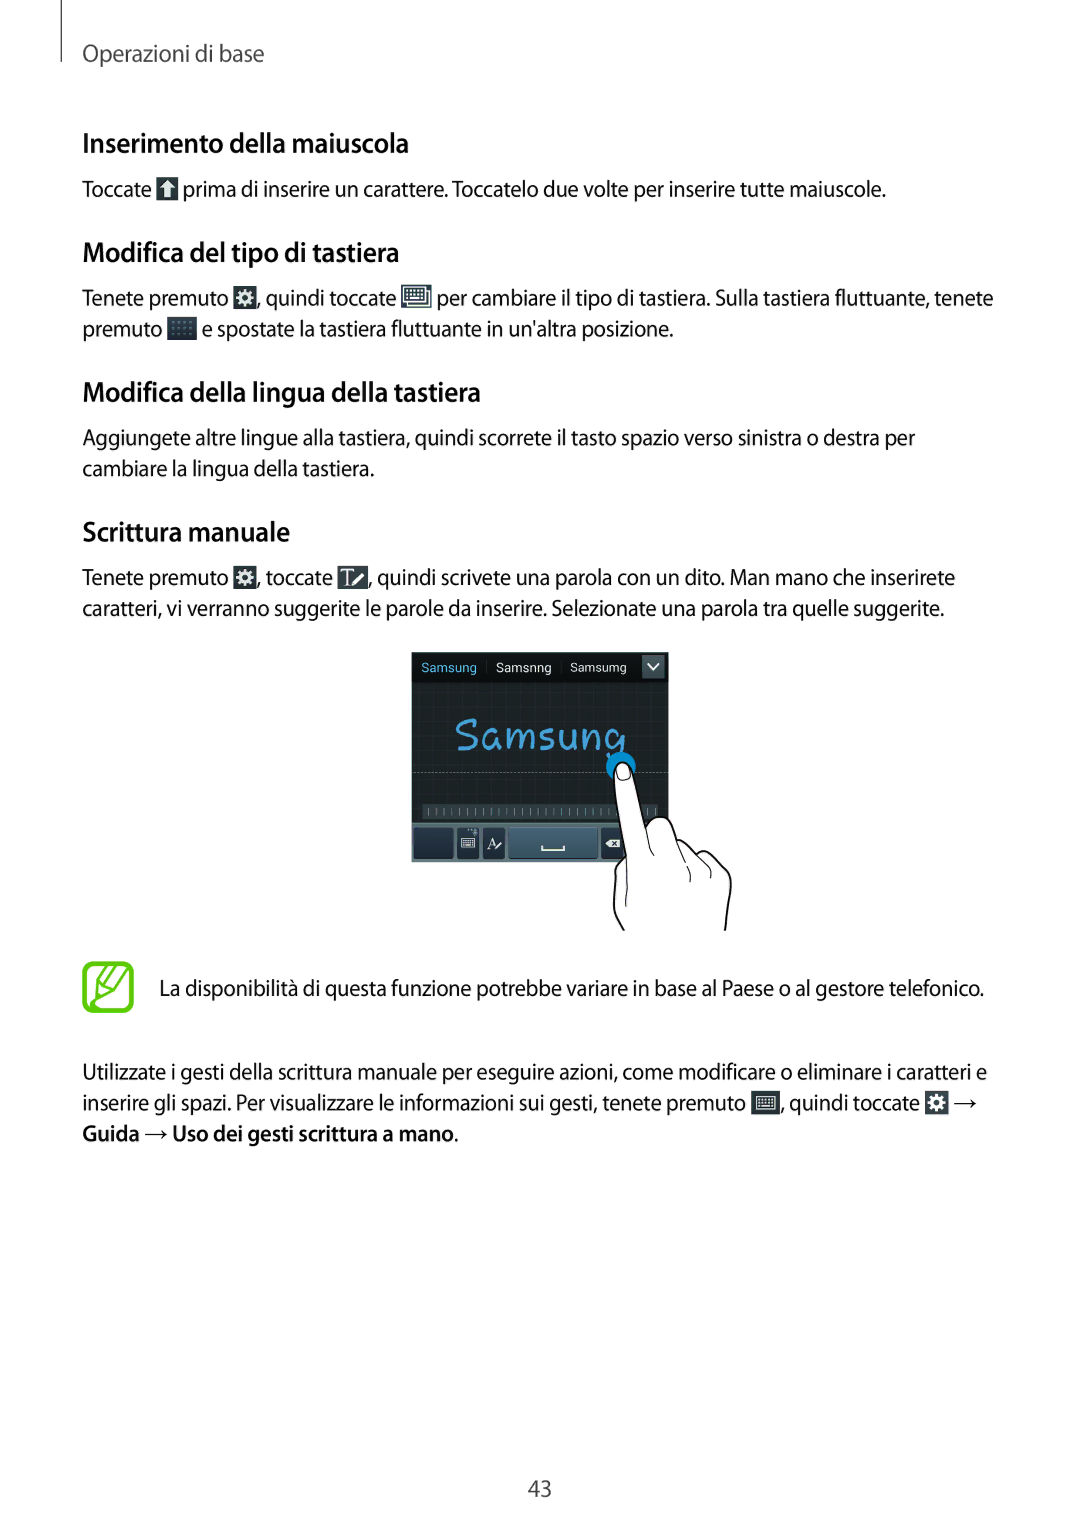 Samsung GT-I9505DKYPLS Inserimento della maiuscola, Modifica del tipo di tastiera, Modifica della lingua della tastiera 